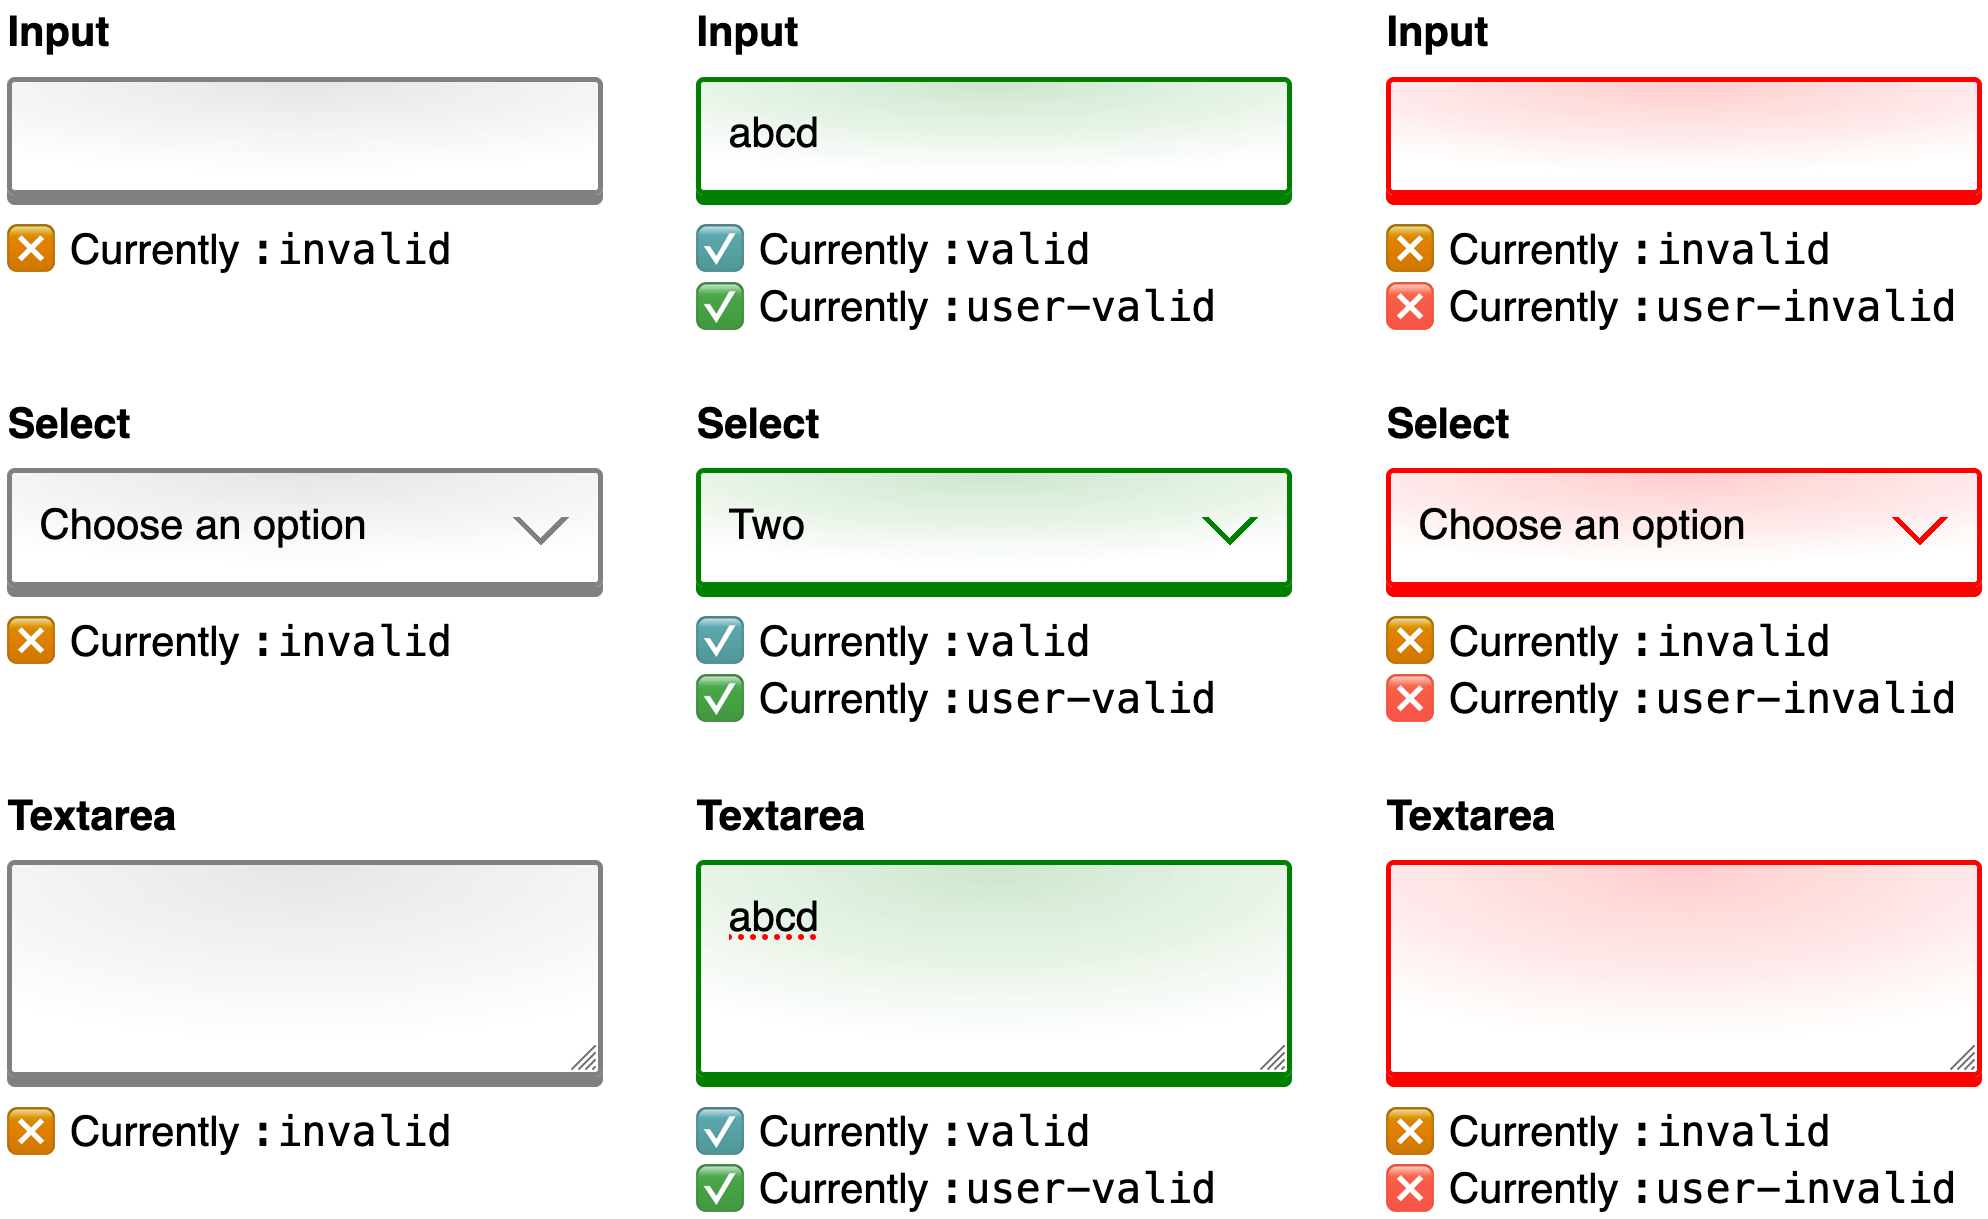 Un&#39;immagine che combina 3 screenshot affiancati per il confronto. Ogni screenshot mostra un modulo web con gli stessi controlli di input, selezione e area di testo. Il primo screenshot mostra il modulo nello stato iniziale prima di qualsiasi input utente. I bordi dei controlli sono grigi e il testo della guida riportato di seguito spiega che ogni controllo attualmente corrisponde al selettore di pseudo-classe :invalid. Il secondo screenshot mostra lo stesso modulo dopo che un utente ha fornito l&#39;input per ciascun controllo. I bordi del controllo sono verdi e il testo della guida riportato di seguito spiega che ogni controllo attualmente corrisponde a entrambi i selettori di pseudo-classe :valid e :user-valid. Il terzo e ultimo screenshot mostra lo stesso modulo dopo che un utente ha rimosso tutti i dati inseriti. I bordi del controllo sono rossi e il testo della guida riportato di seguito spiega che ogni controllo attualmente corrisponde a entrambi i selettori di pseudo-classe :invalid e :user-invalid.